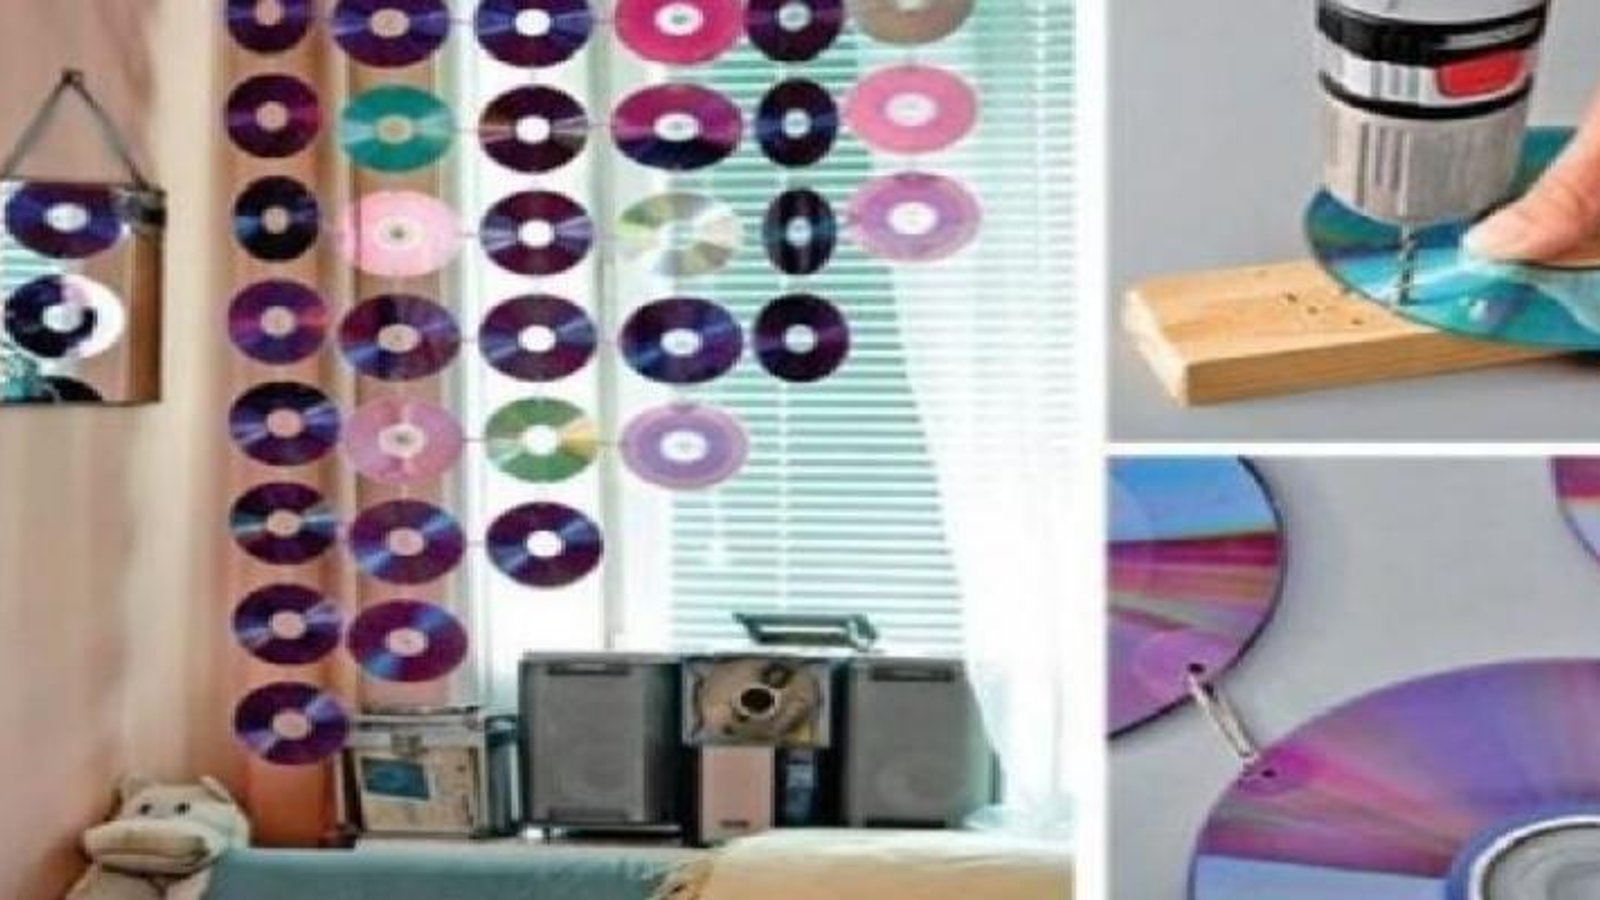 10 façons amusantes de recycler de vieux CD... Certains projets vous surprendront!